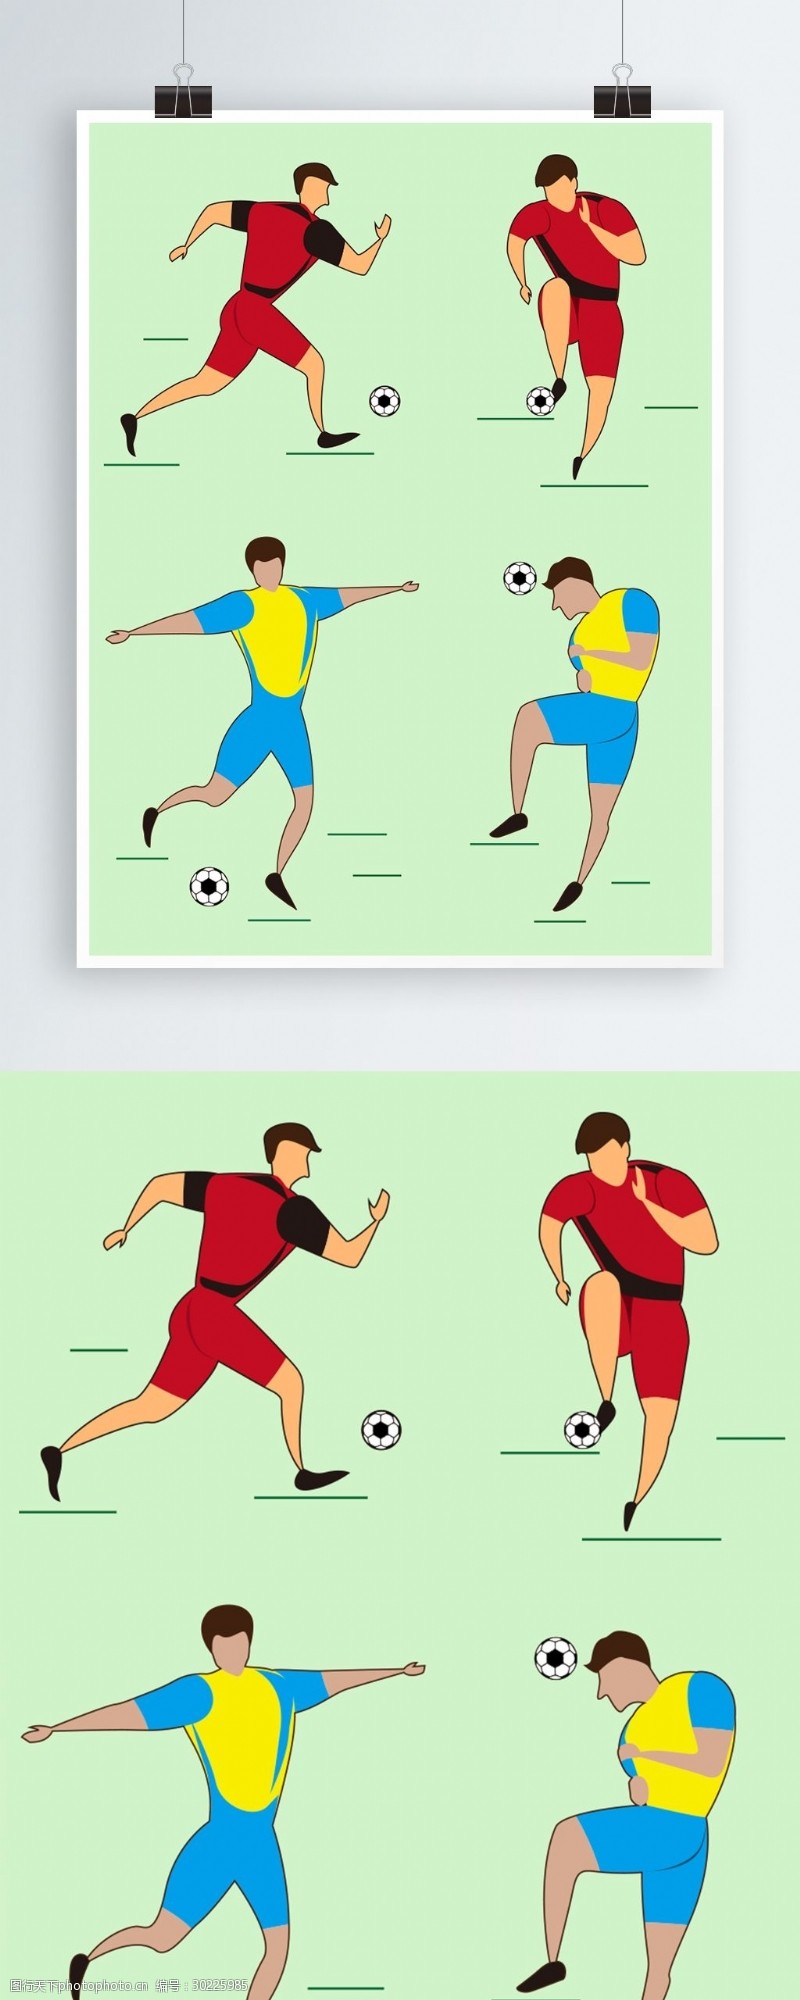 足球运动世界杯踢球运动员简约插画原创设计元素